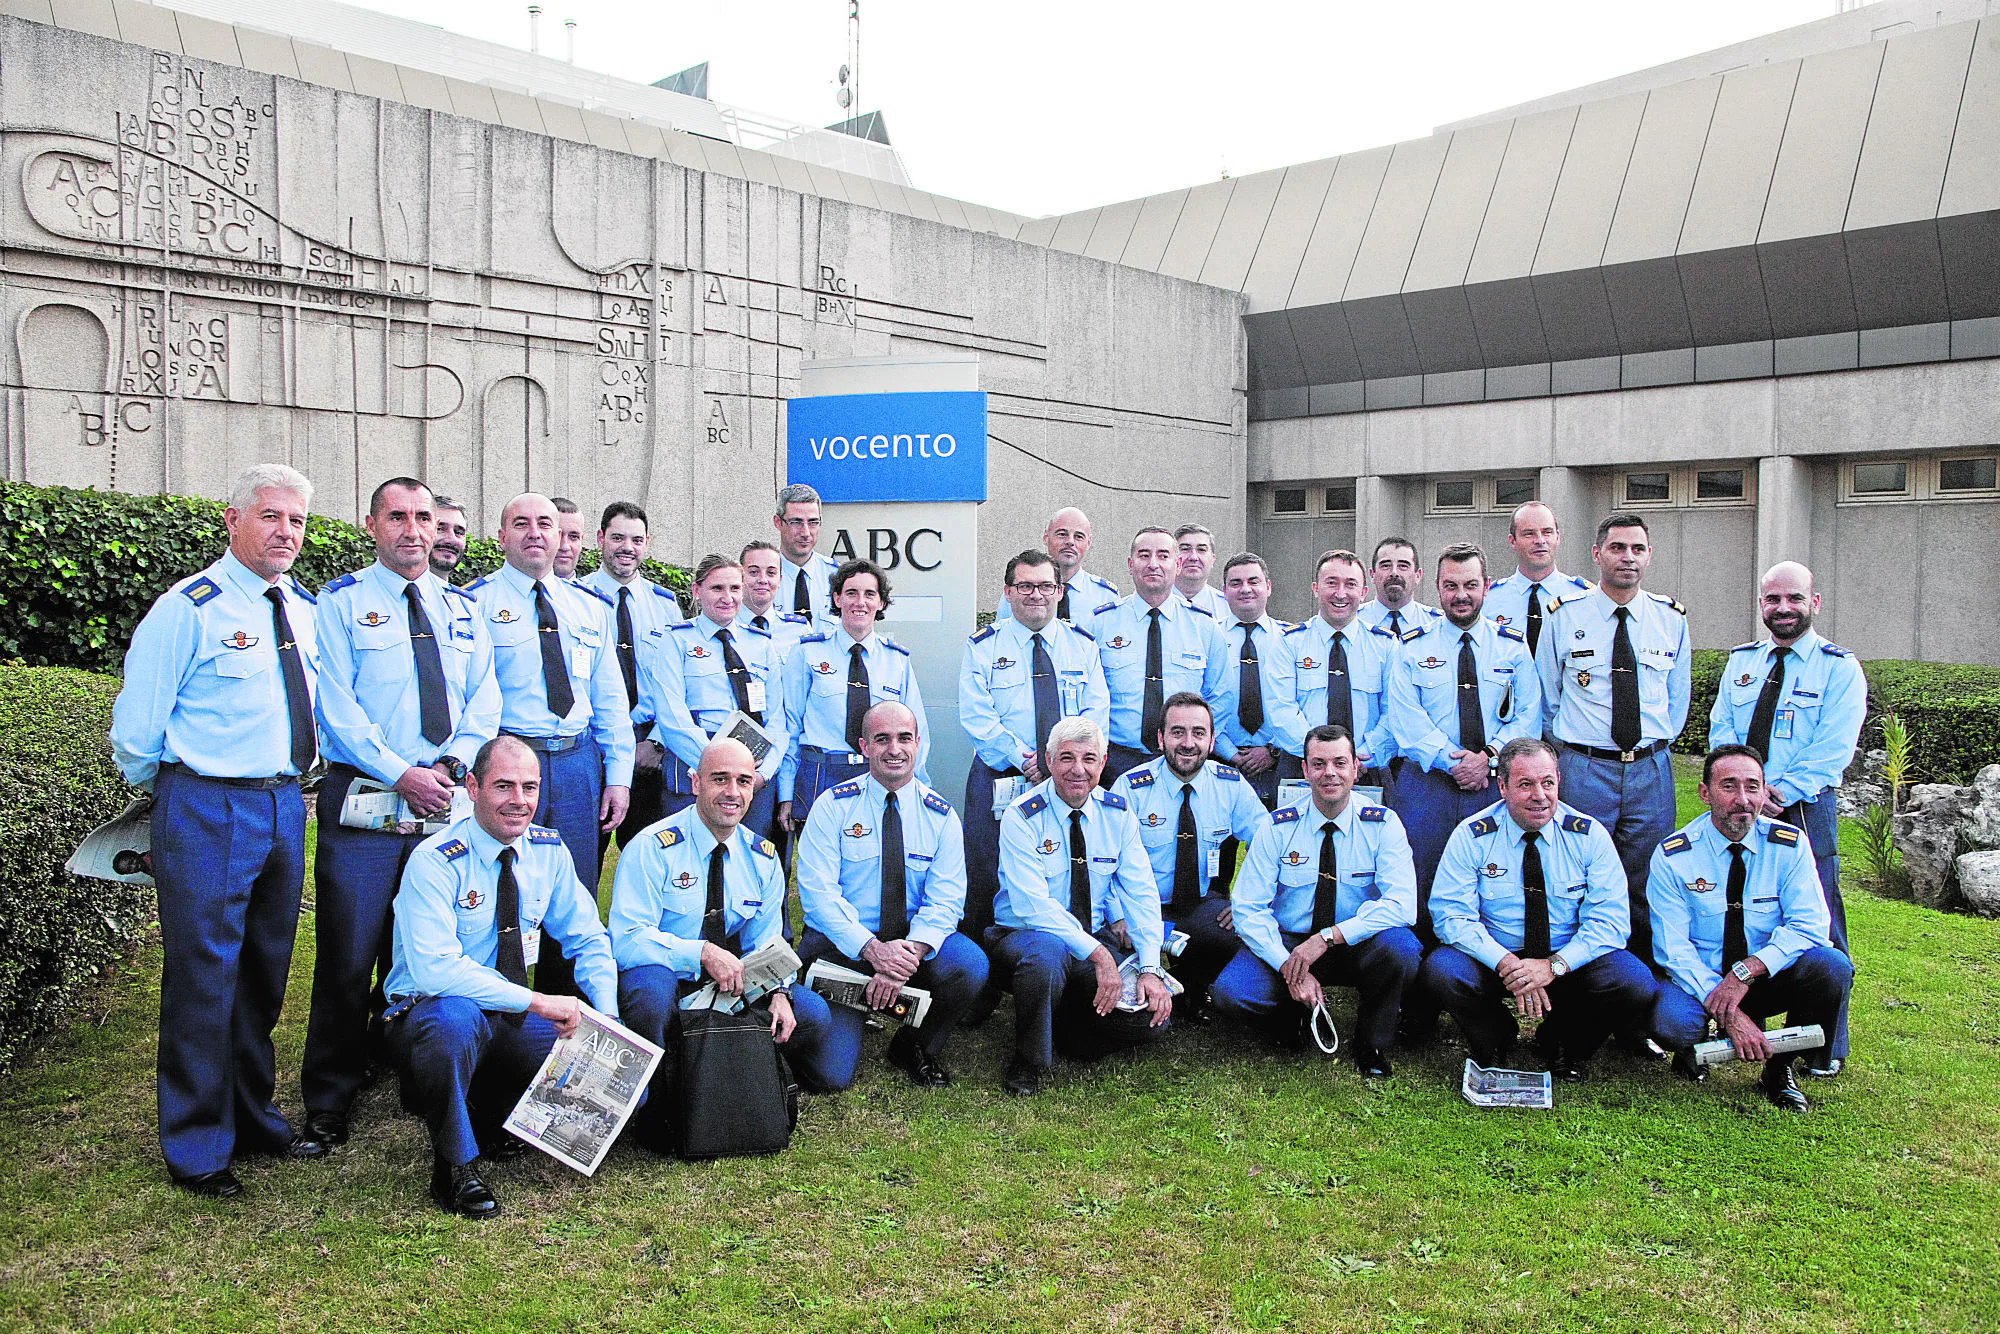 El curso de comunicación del Ejército del Aire visita la Casa de ABC